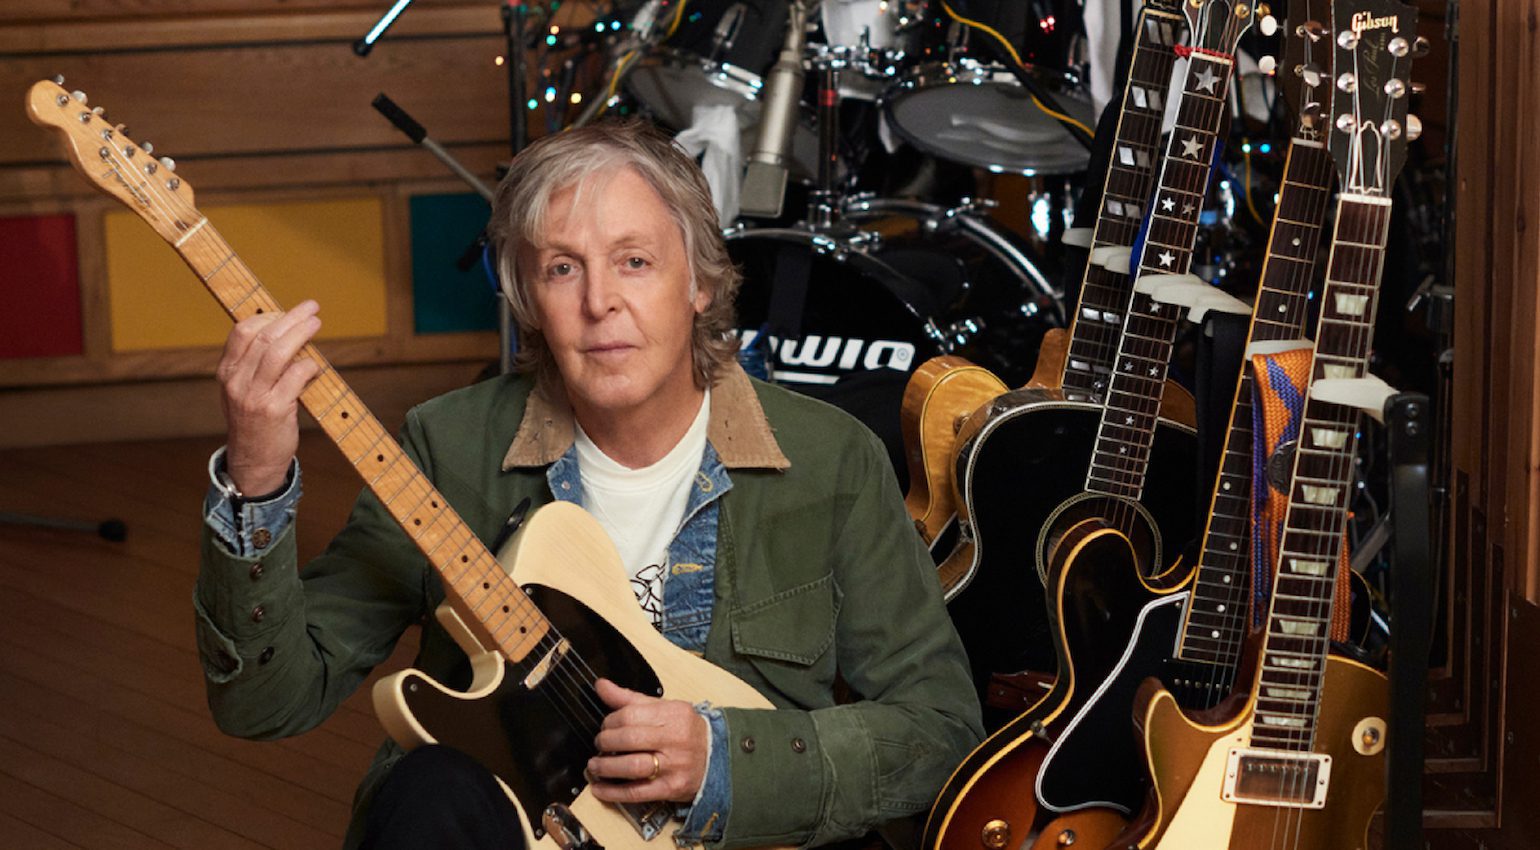 La collezione di chitarre di Paul McCartney ha sempre avuto alcuni pezzi interessanti nel corso degli anni